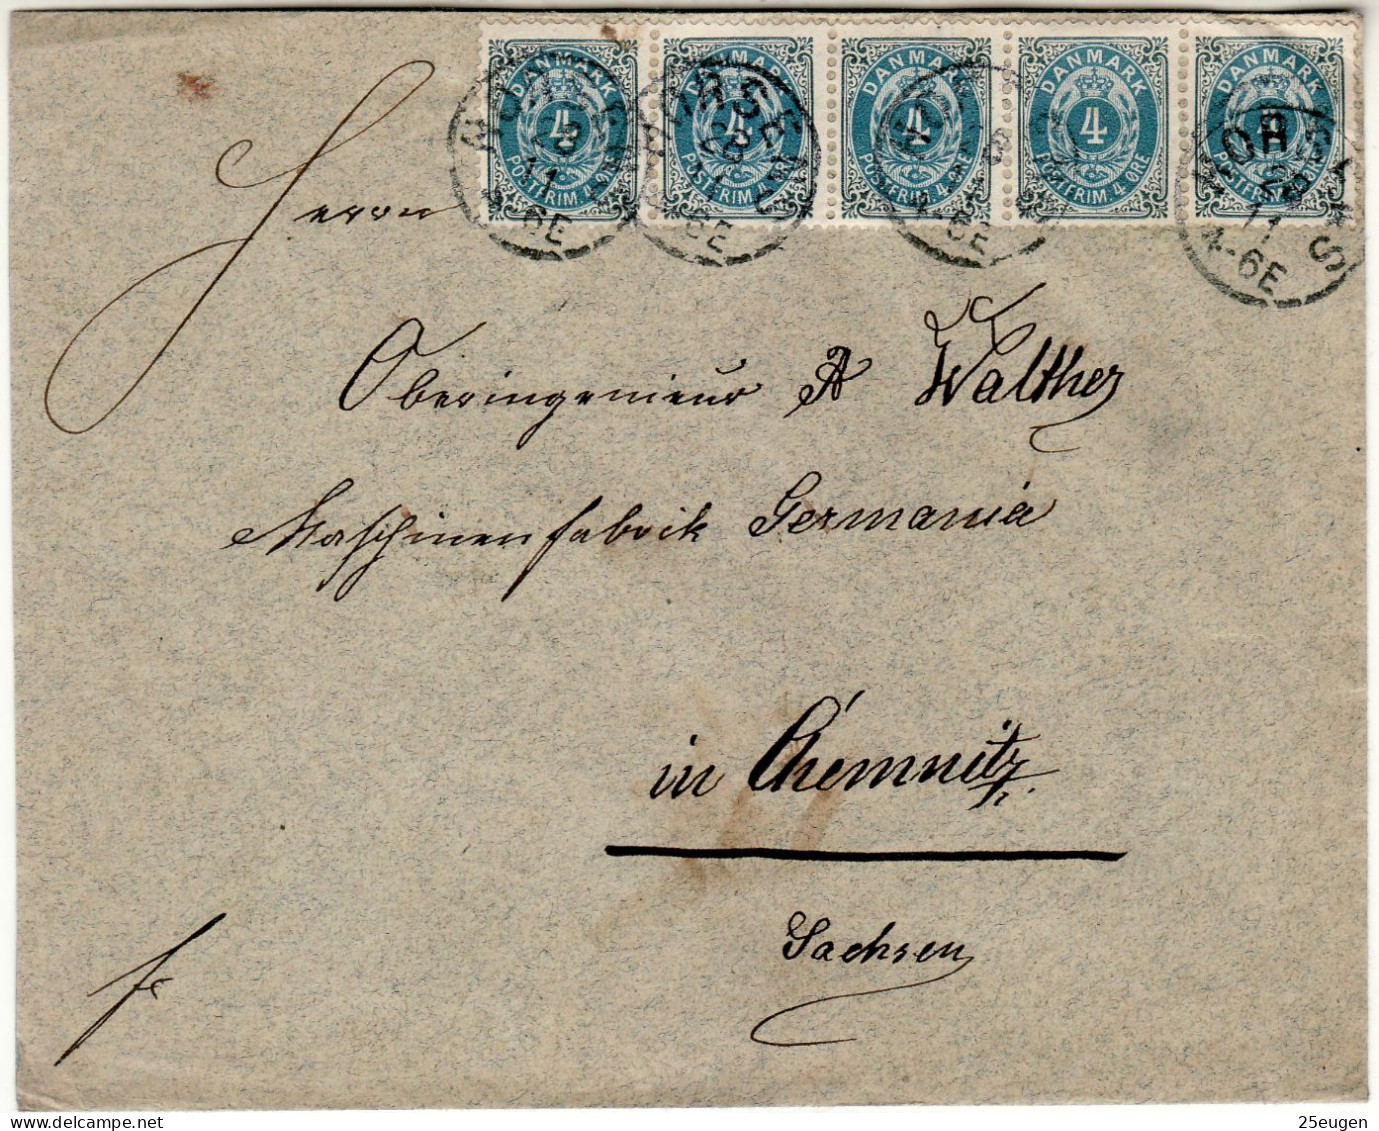 DENMARK 1898 LETTER SENT FROM HORSENS TO CHEMNITZ - Covers & Documents